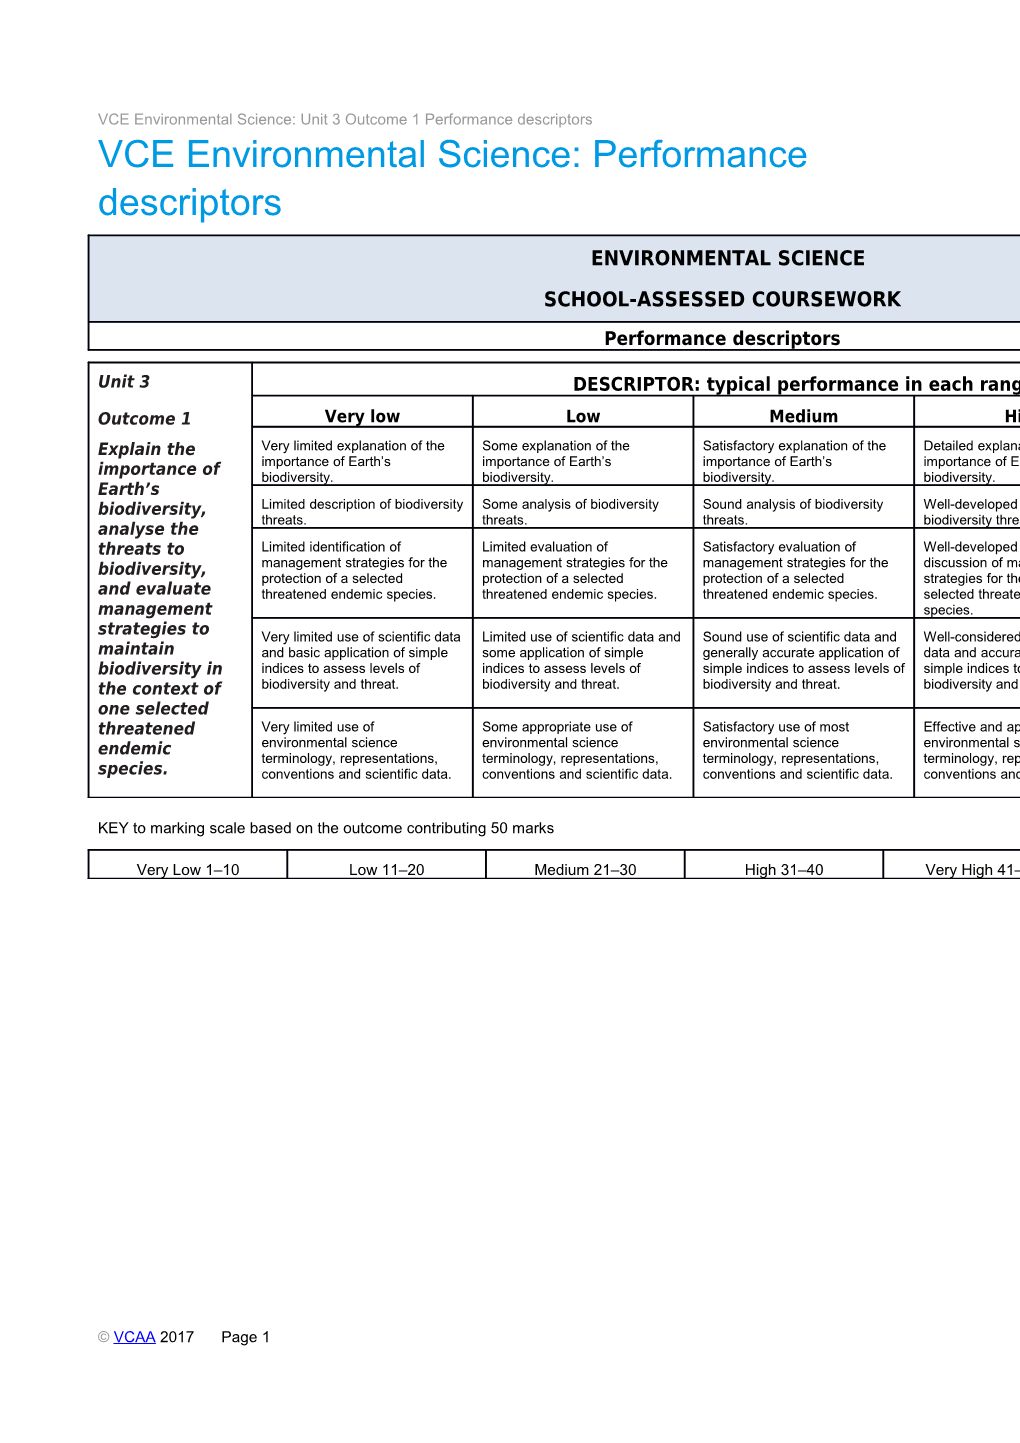 VCE Environmental Science: Unit 3 Outcome 1 Performance Descriptors